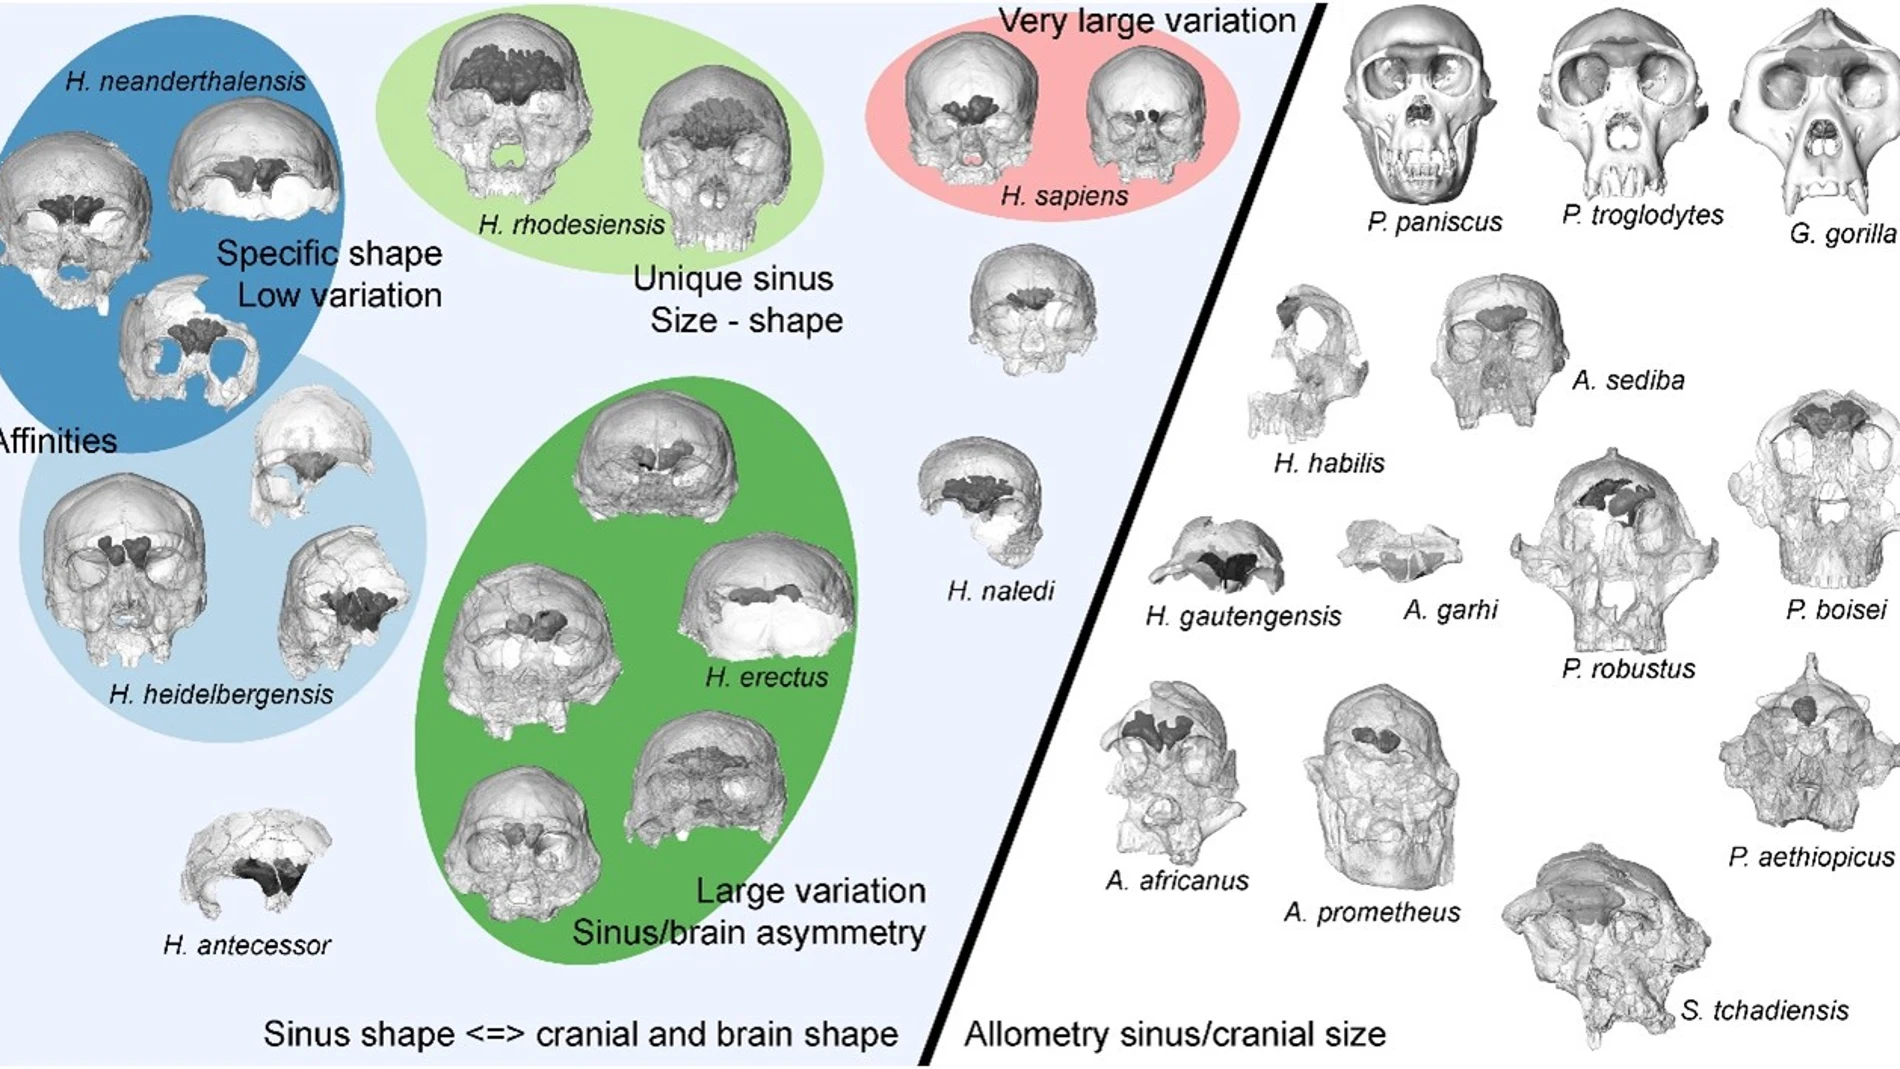 Diagrama esquemático que resume la variación entre taxones y los cambios evolutivos en la morfología del seno frontal de los homínidos.